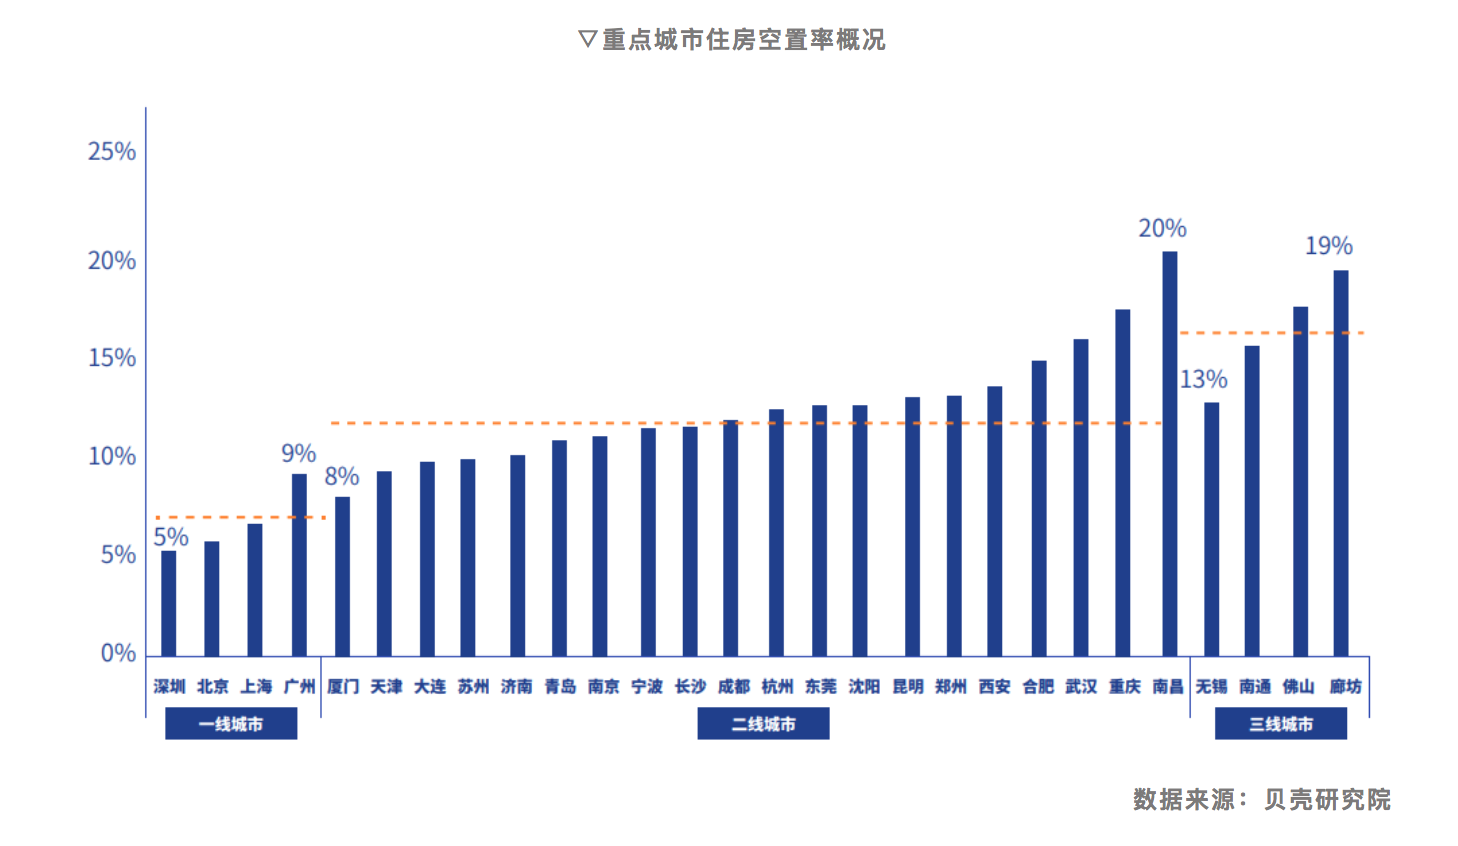 28个大中城市平均住房空置率12%深圳、北京、上海最低